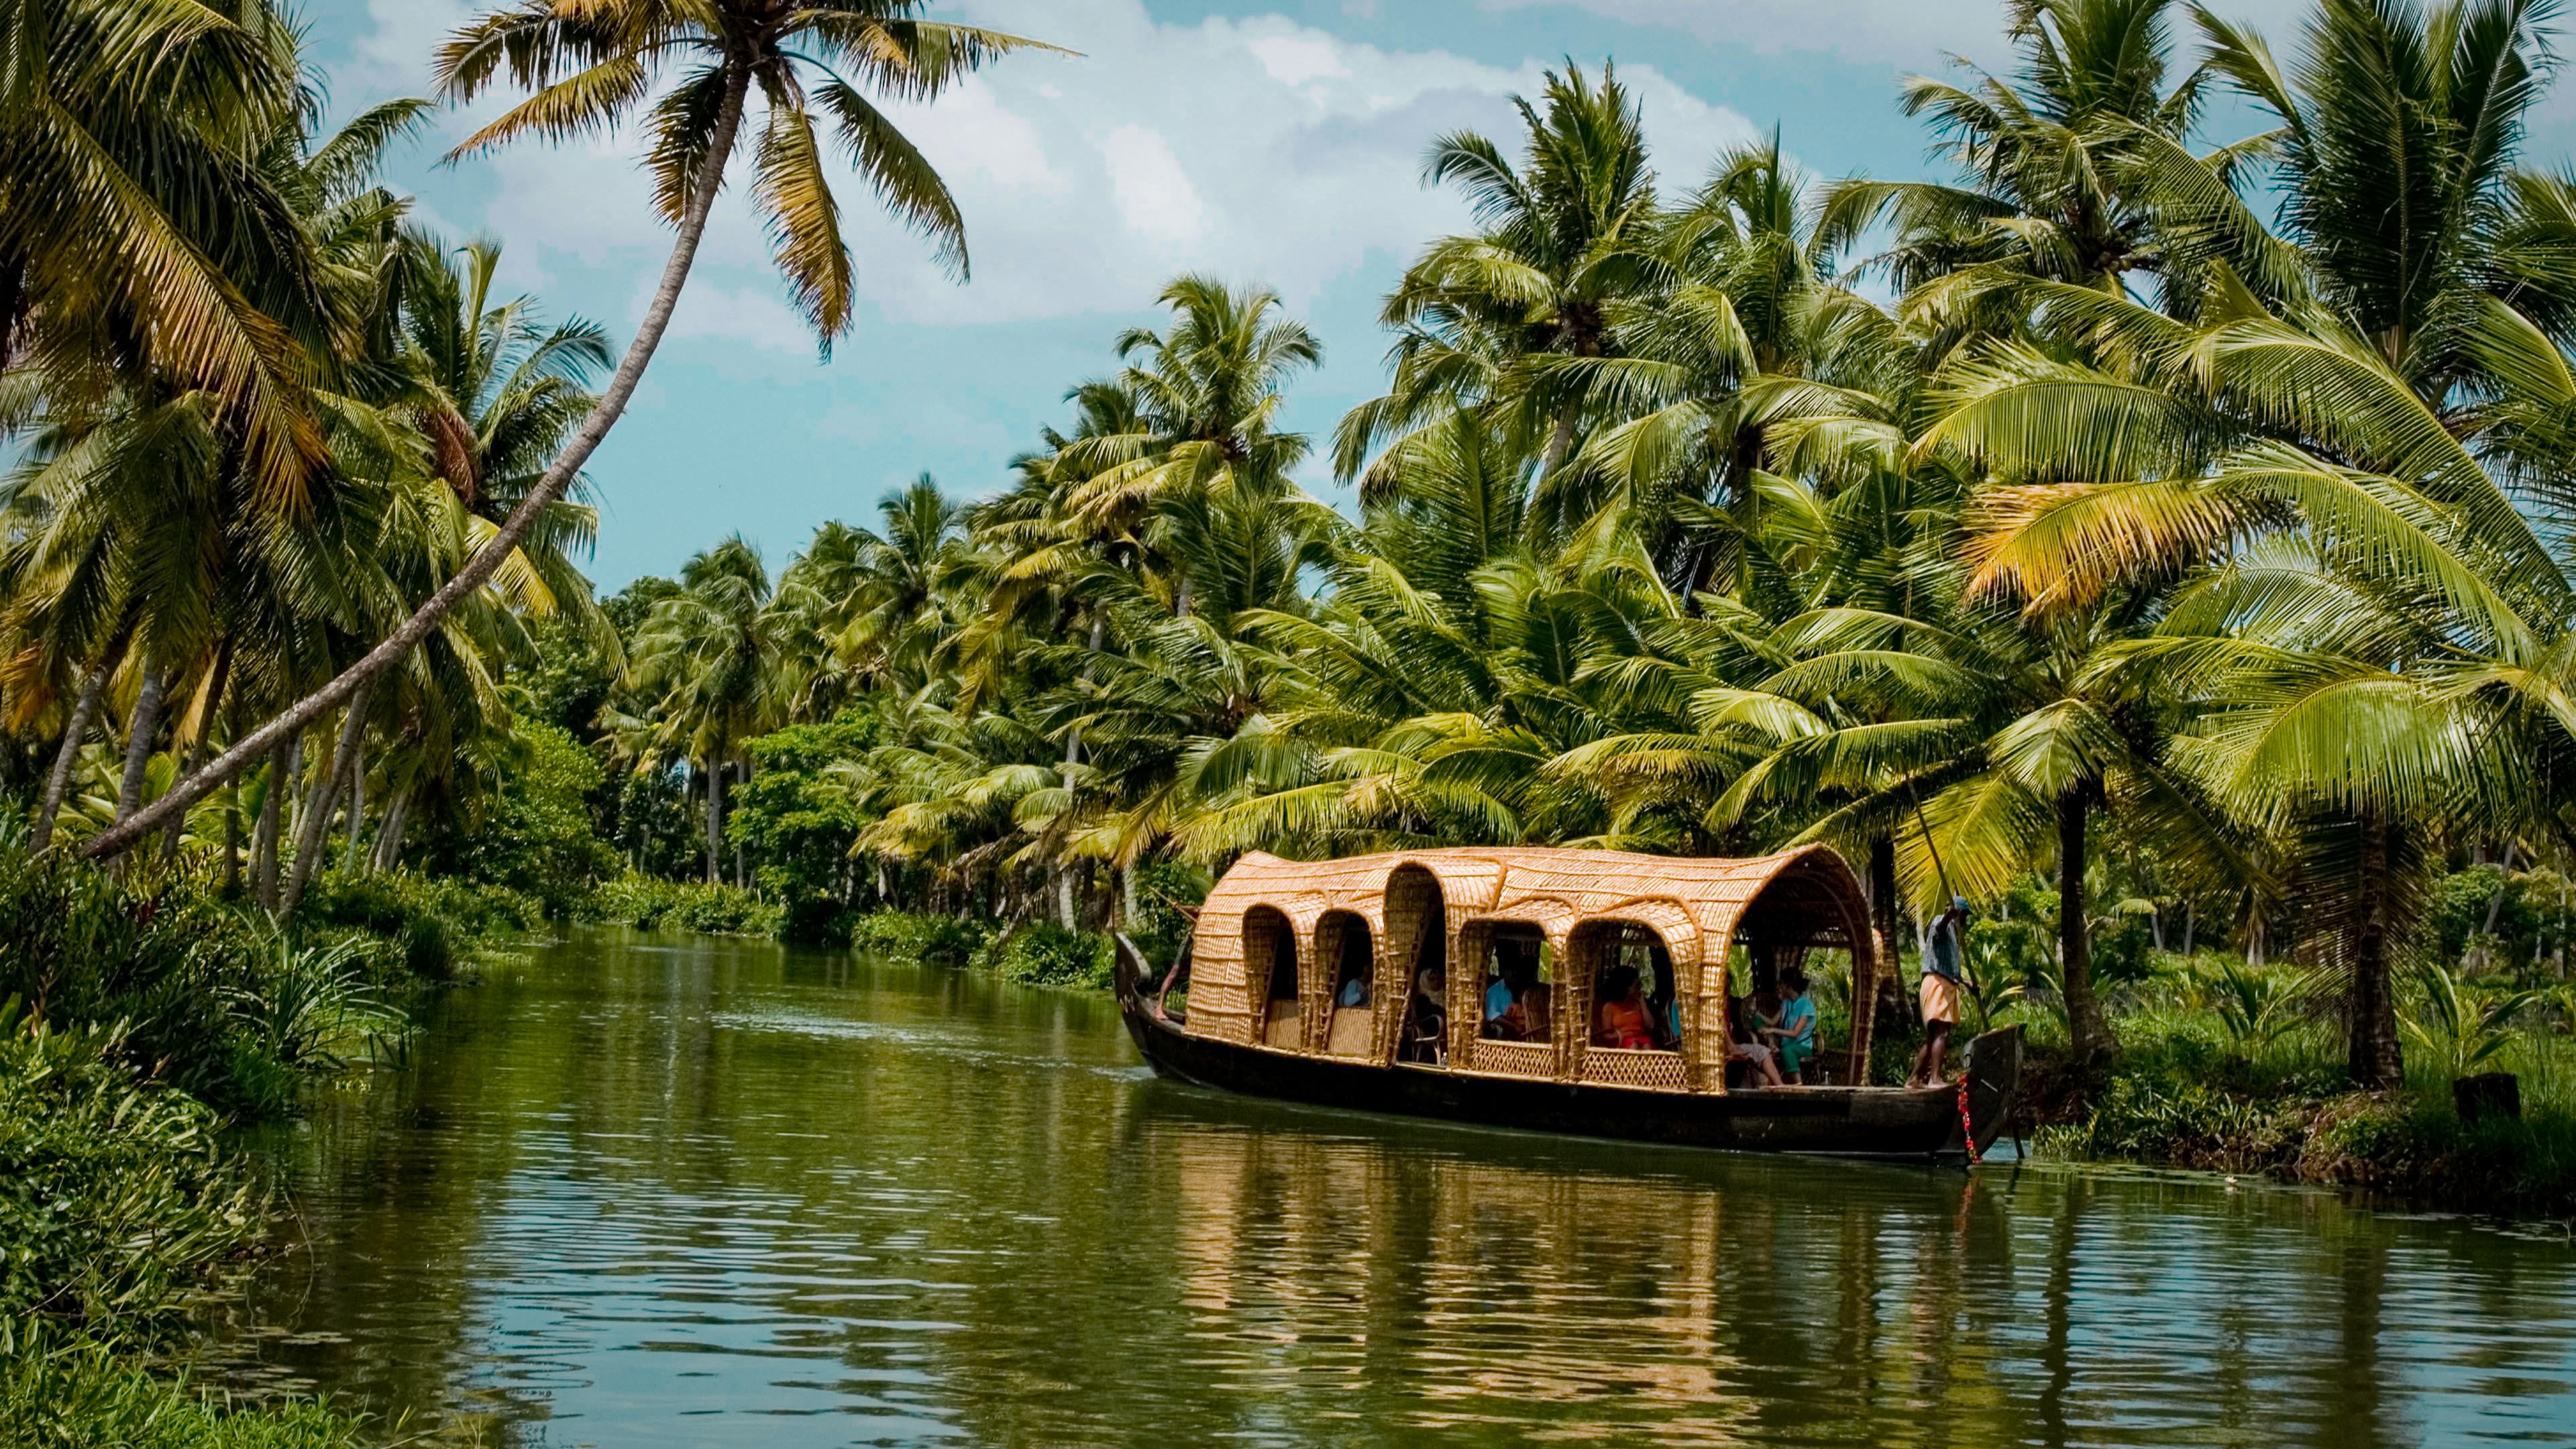 Enjoy houseboat ride in Kerala